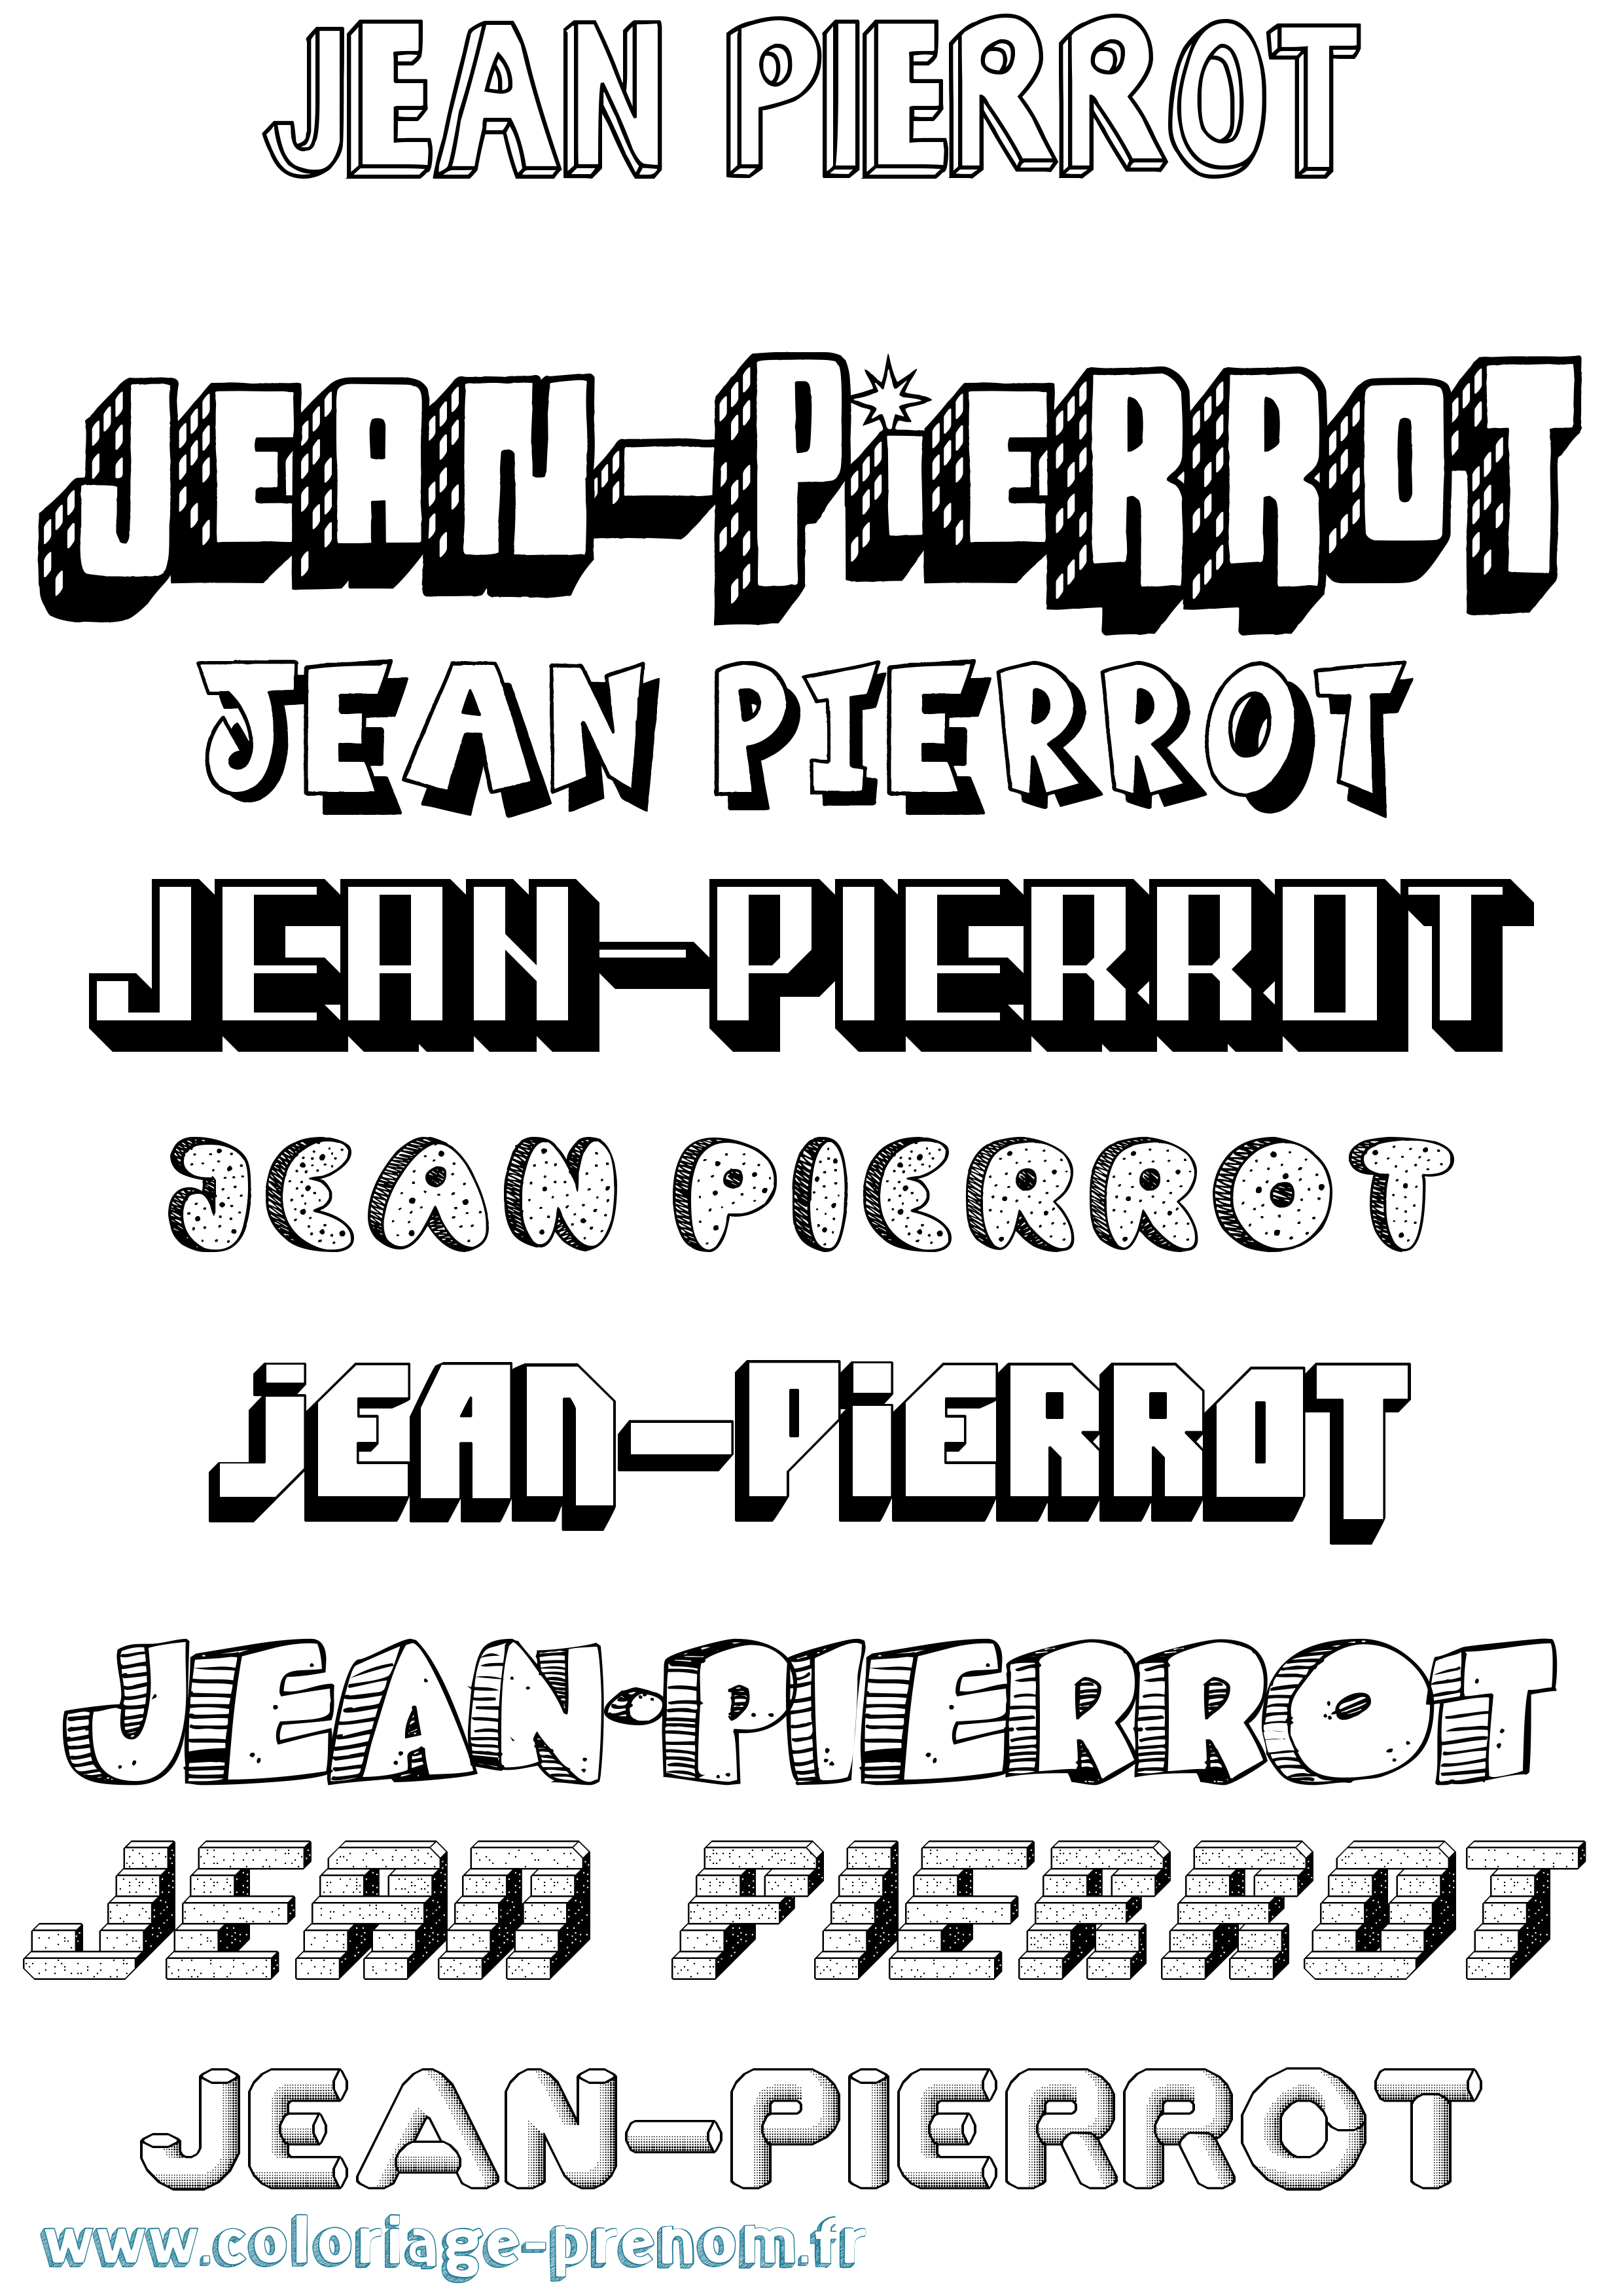 Coloriage prénom Jean-Pierrot Effet 3D